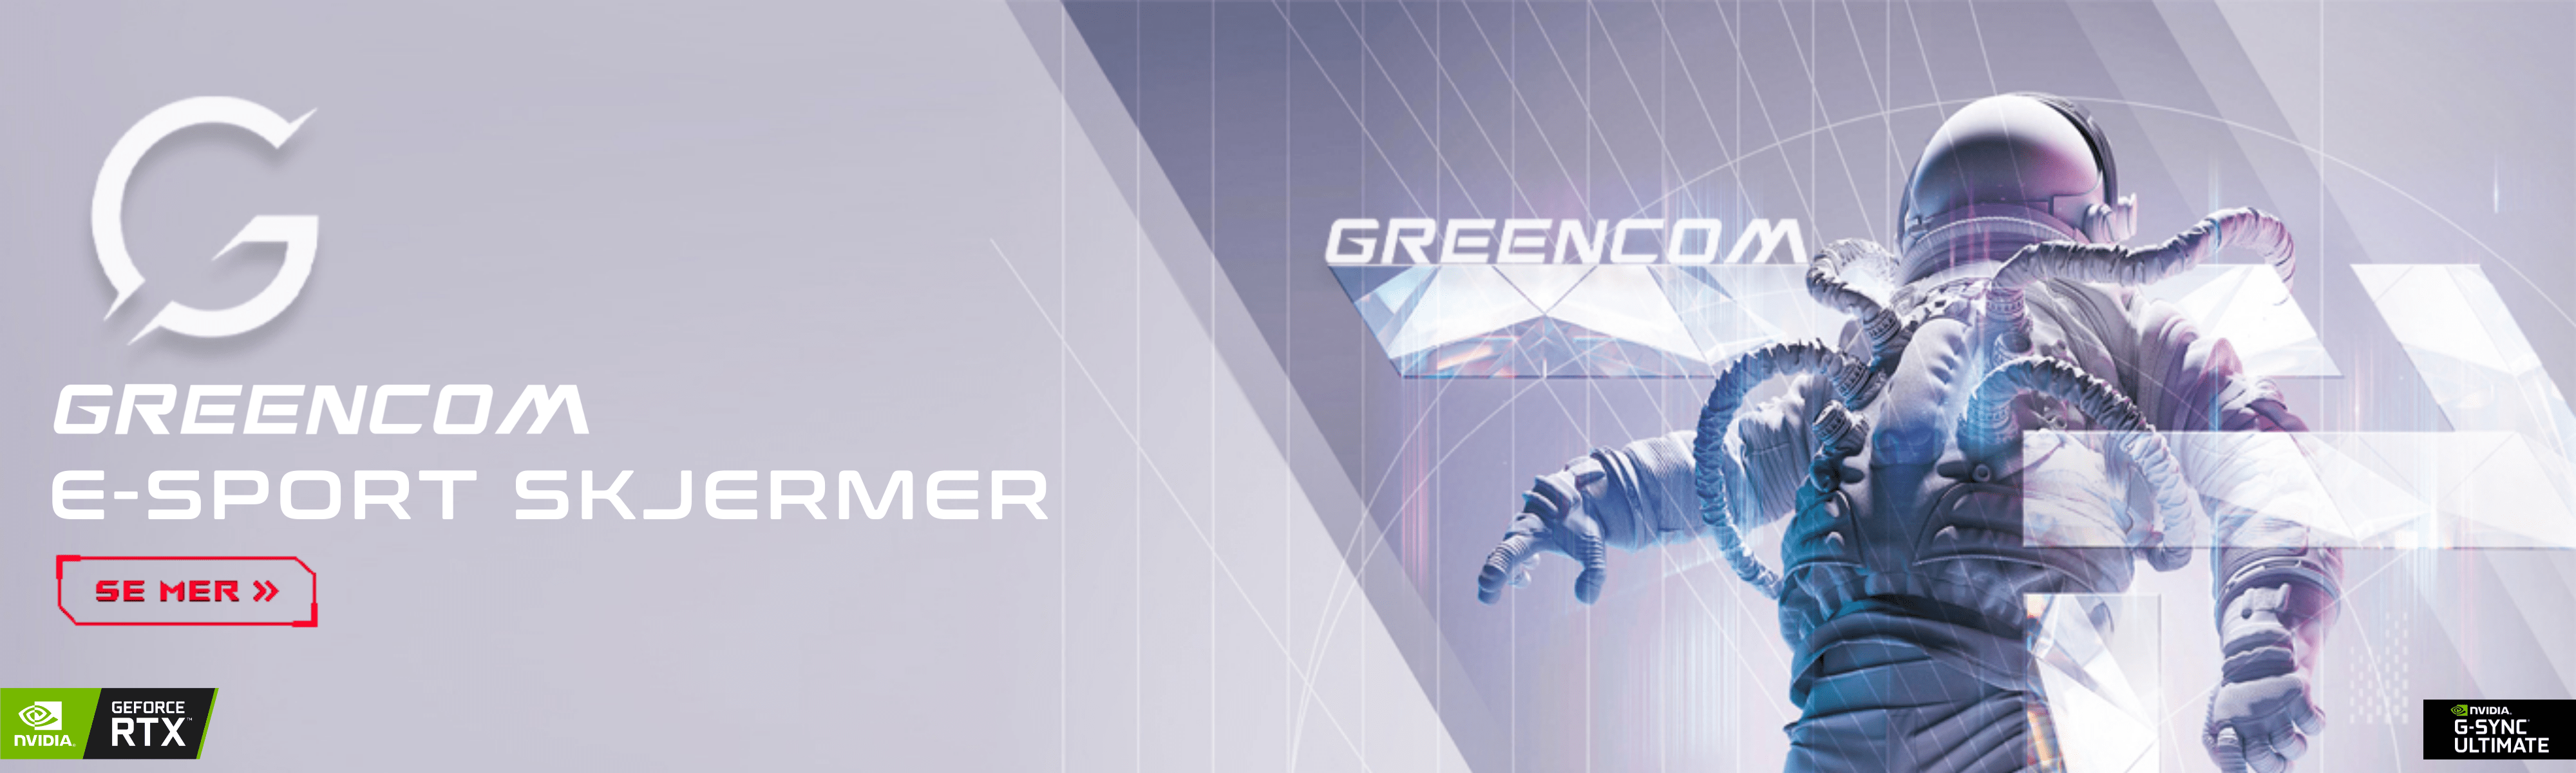 Greencom E-sport skjermer